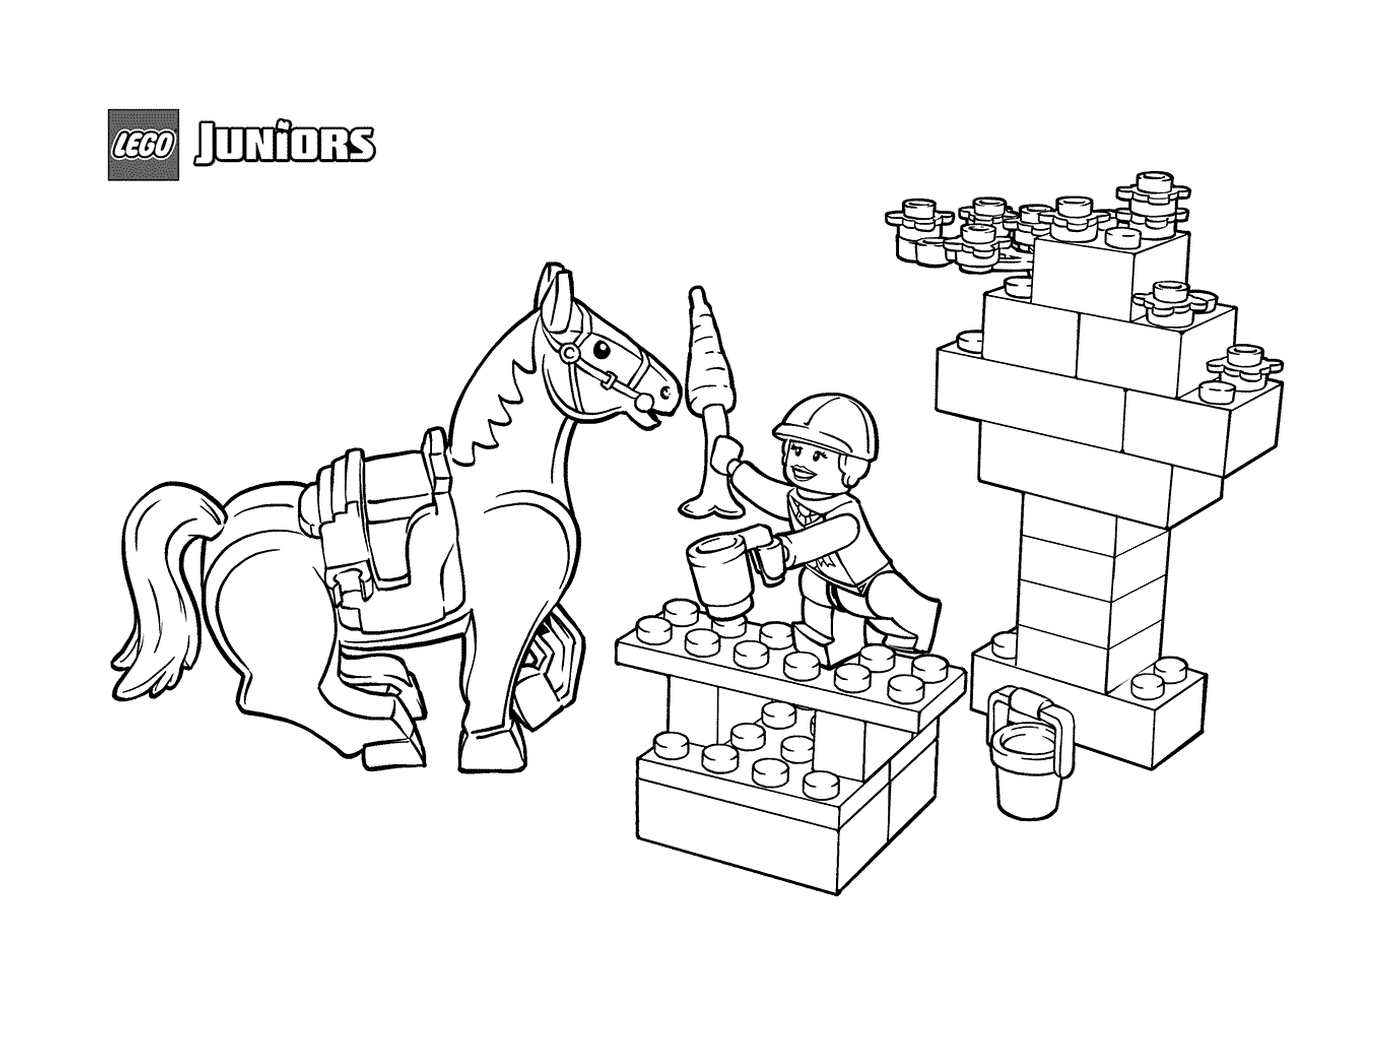  Snack equino en LEGO Junior 